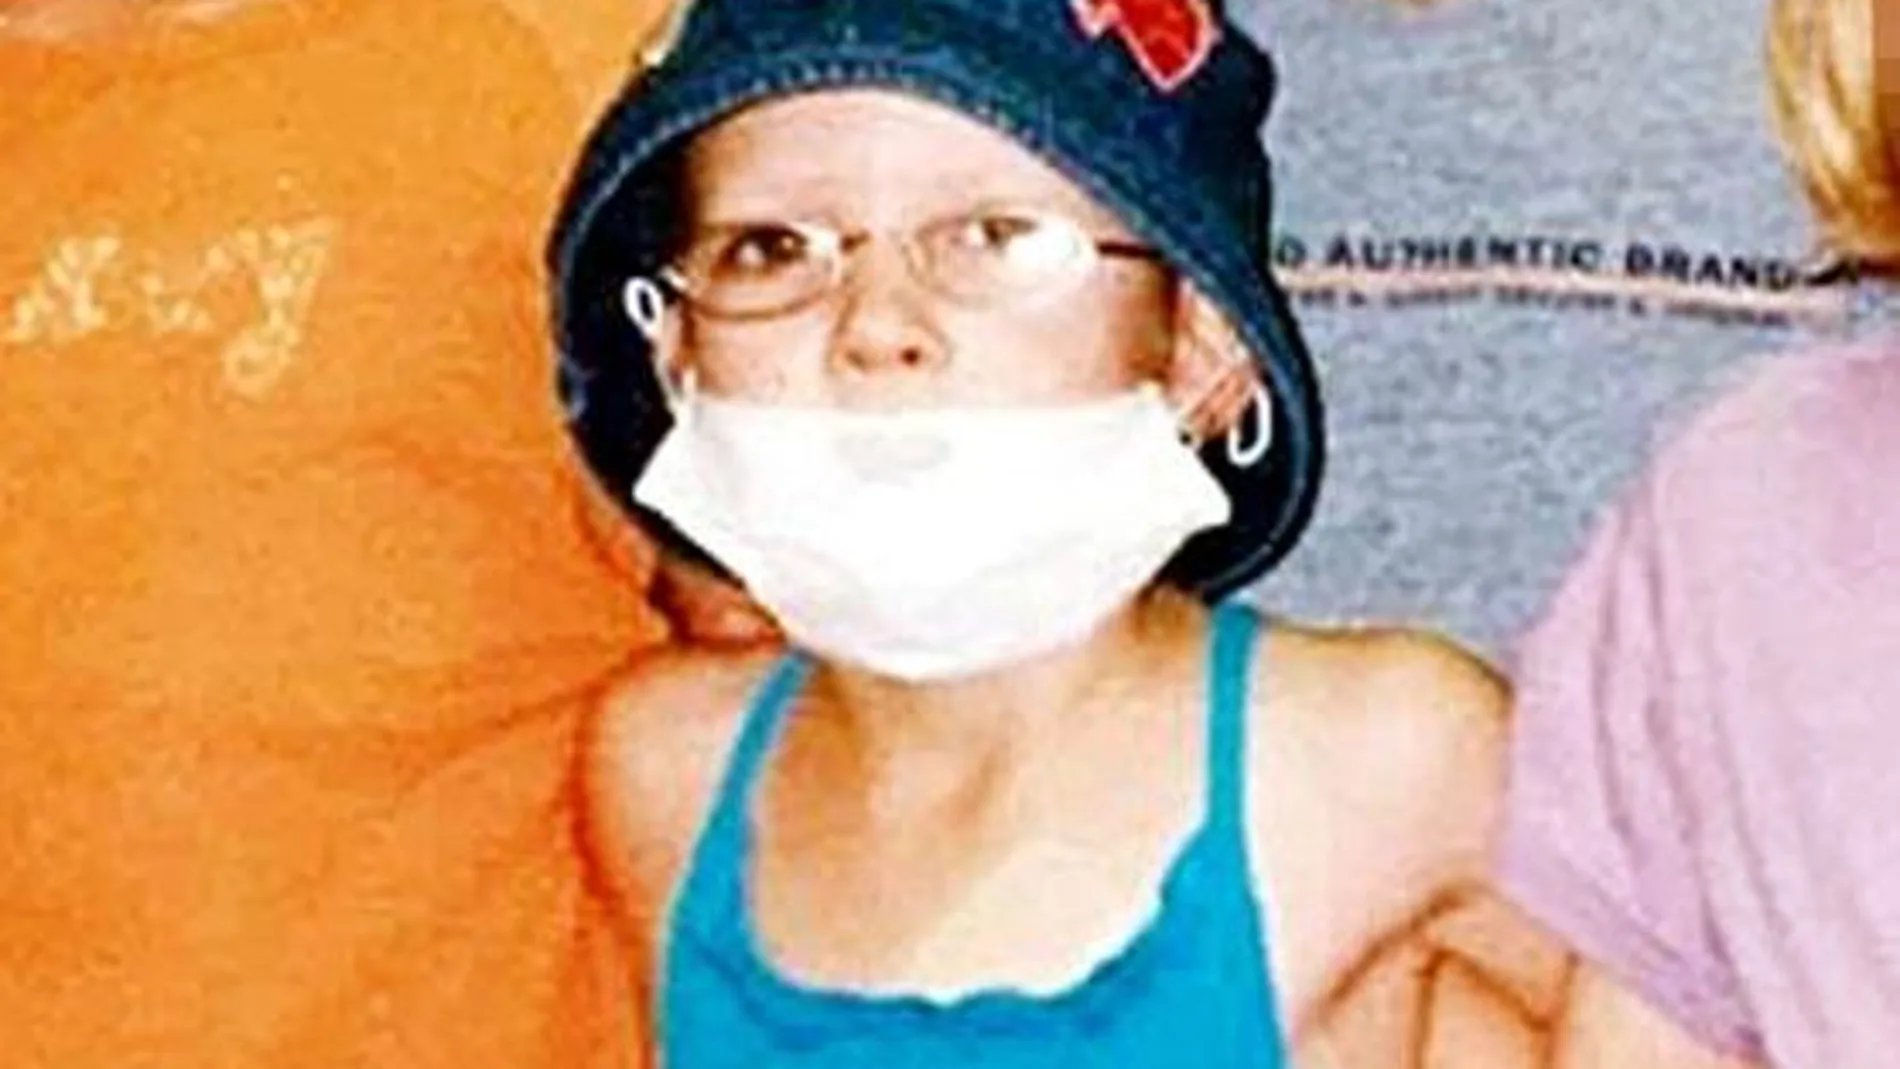 Hannah con una máscara que su madre le obligaba a llevar por la enfermedad